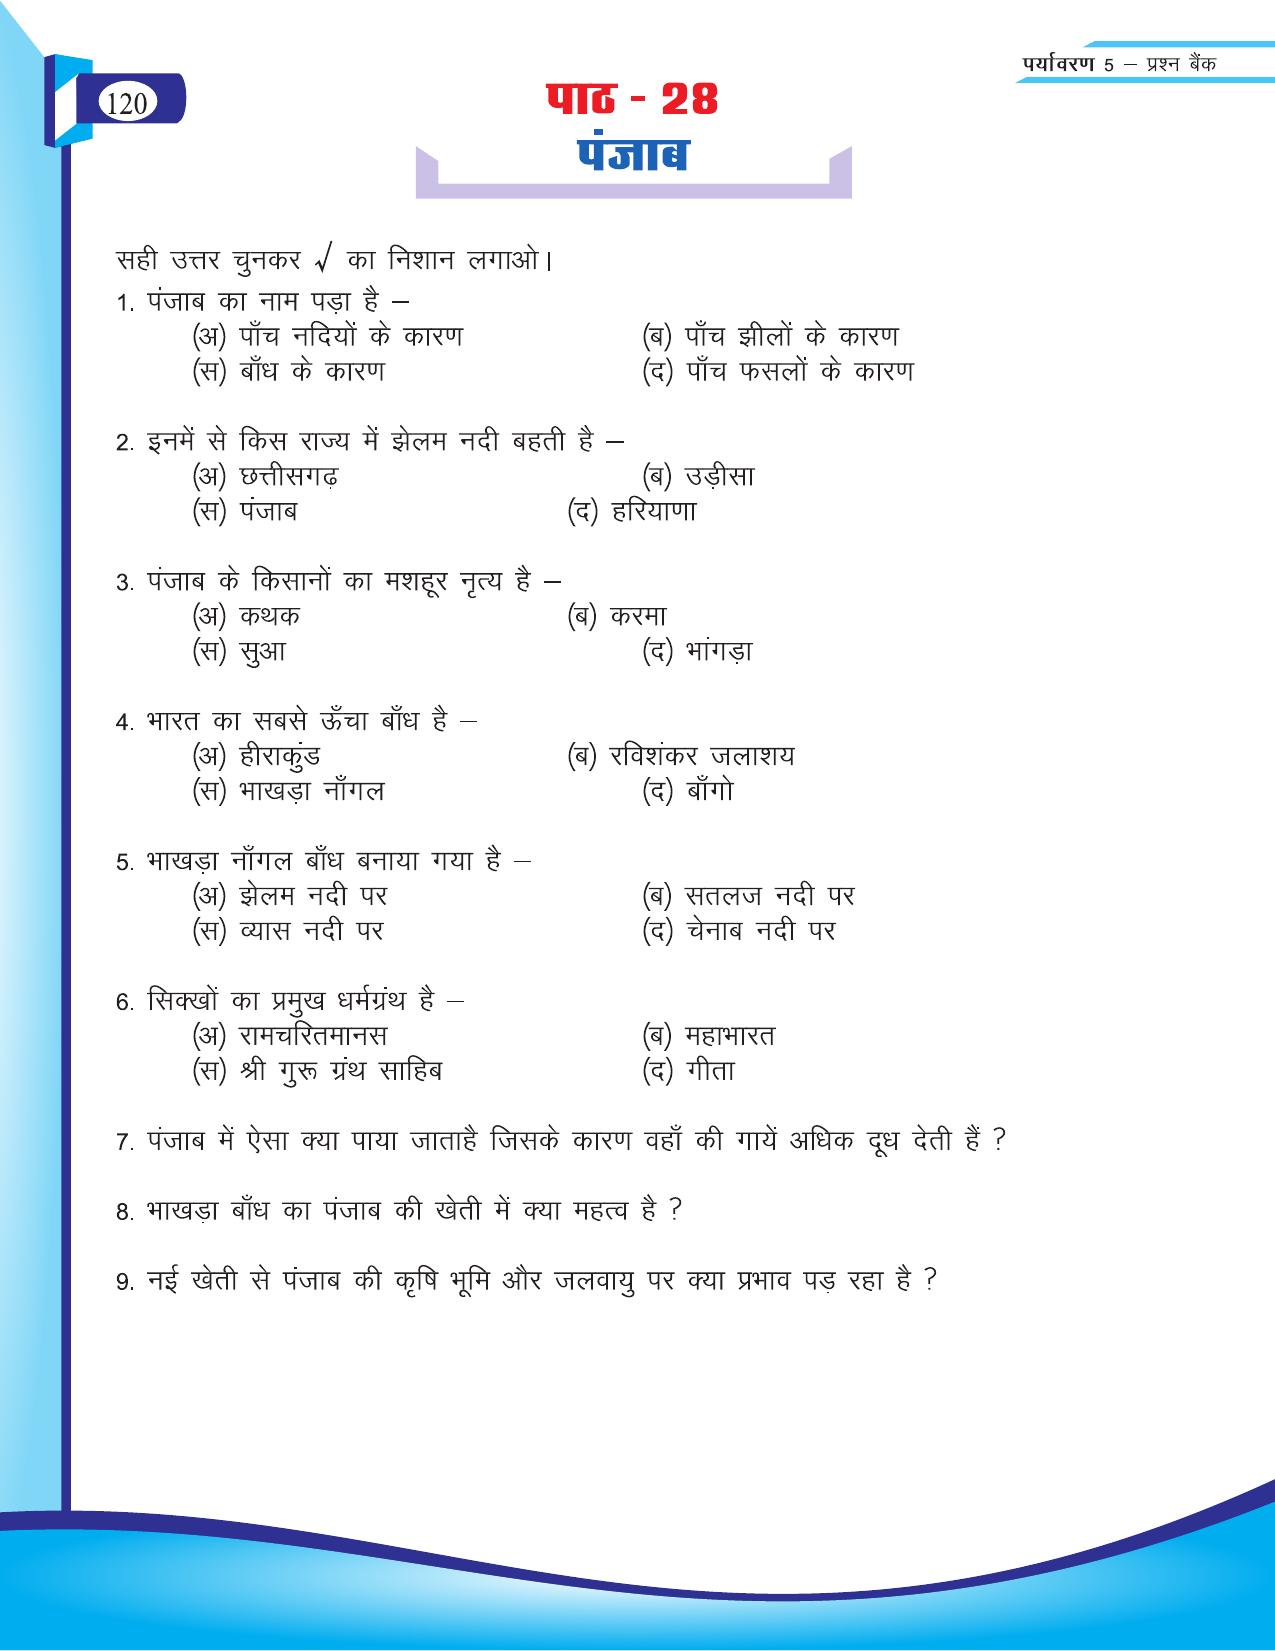 Chhattisgarh Board Class 5 EVS Question Bank 2015-16 - Page 46